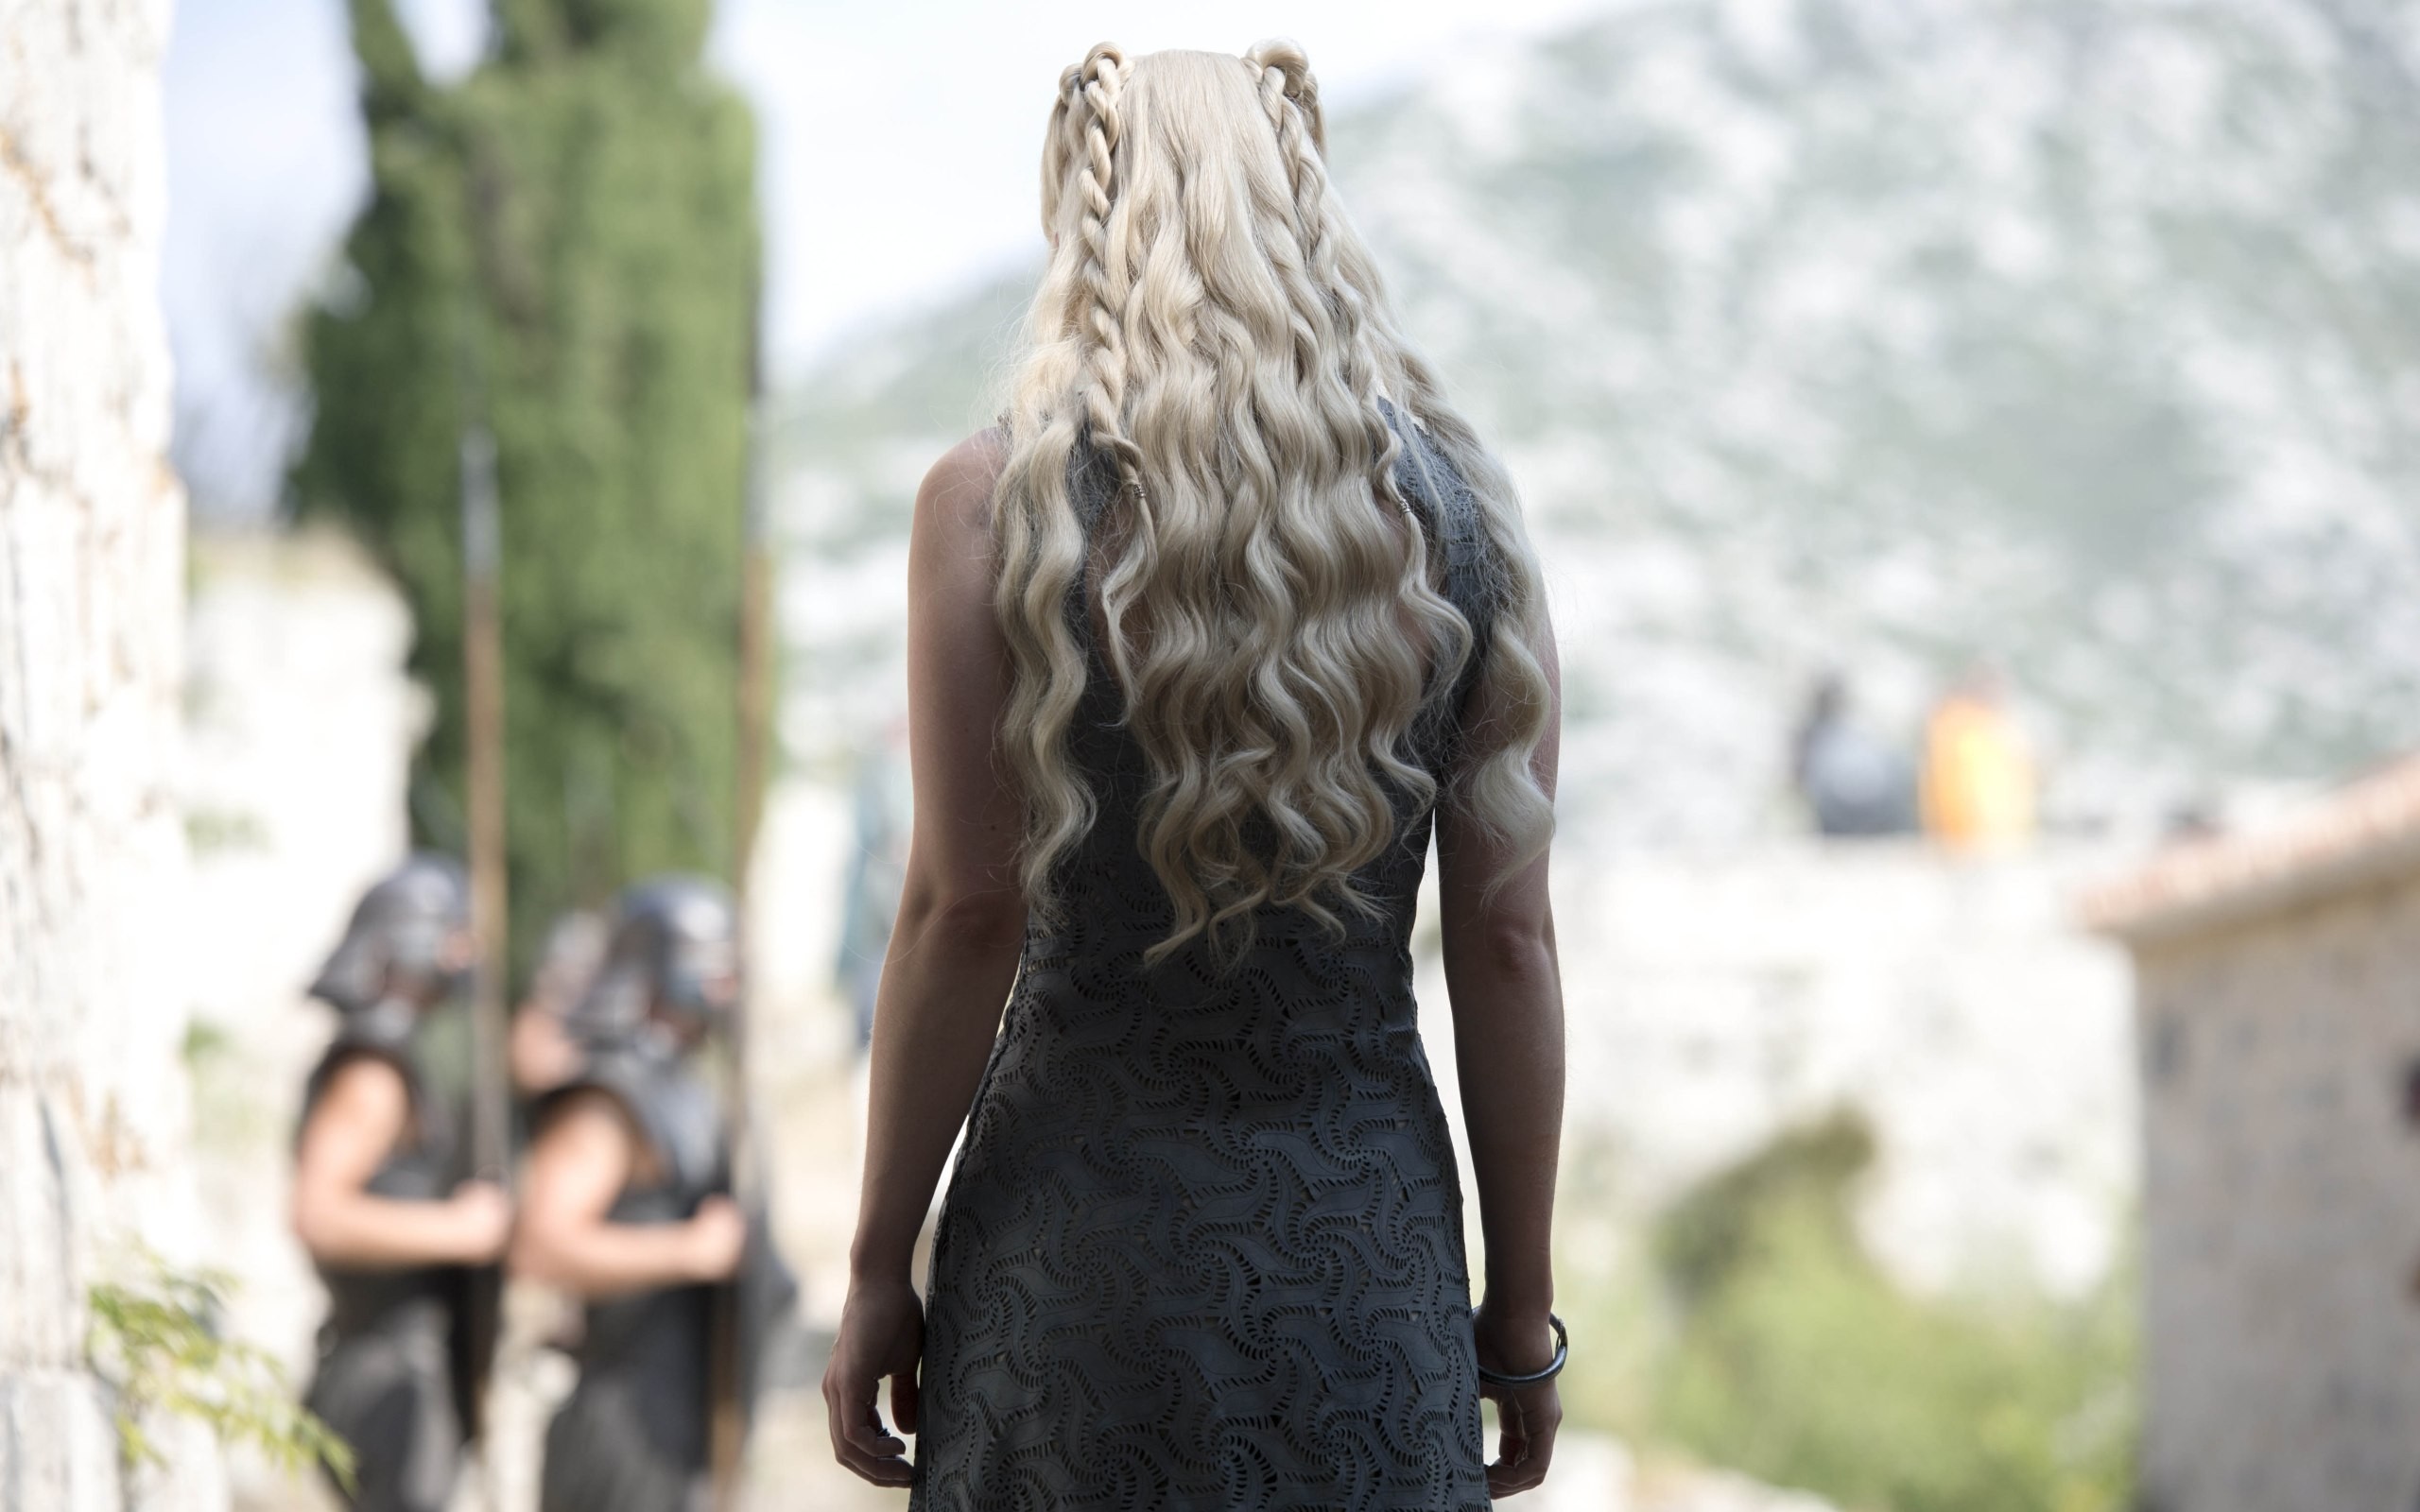 People 2560x1600 Game of Thrones Daenerys Targaryen Emilia Clarke women blonde TV series long hair fantasy girl actress